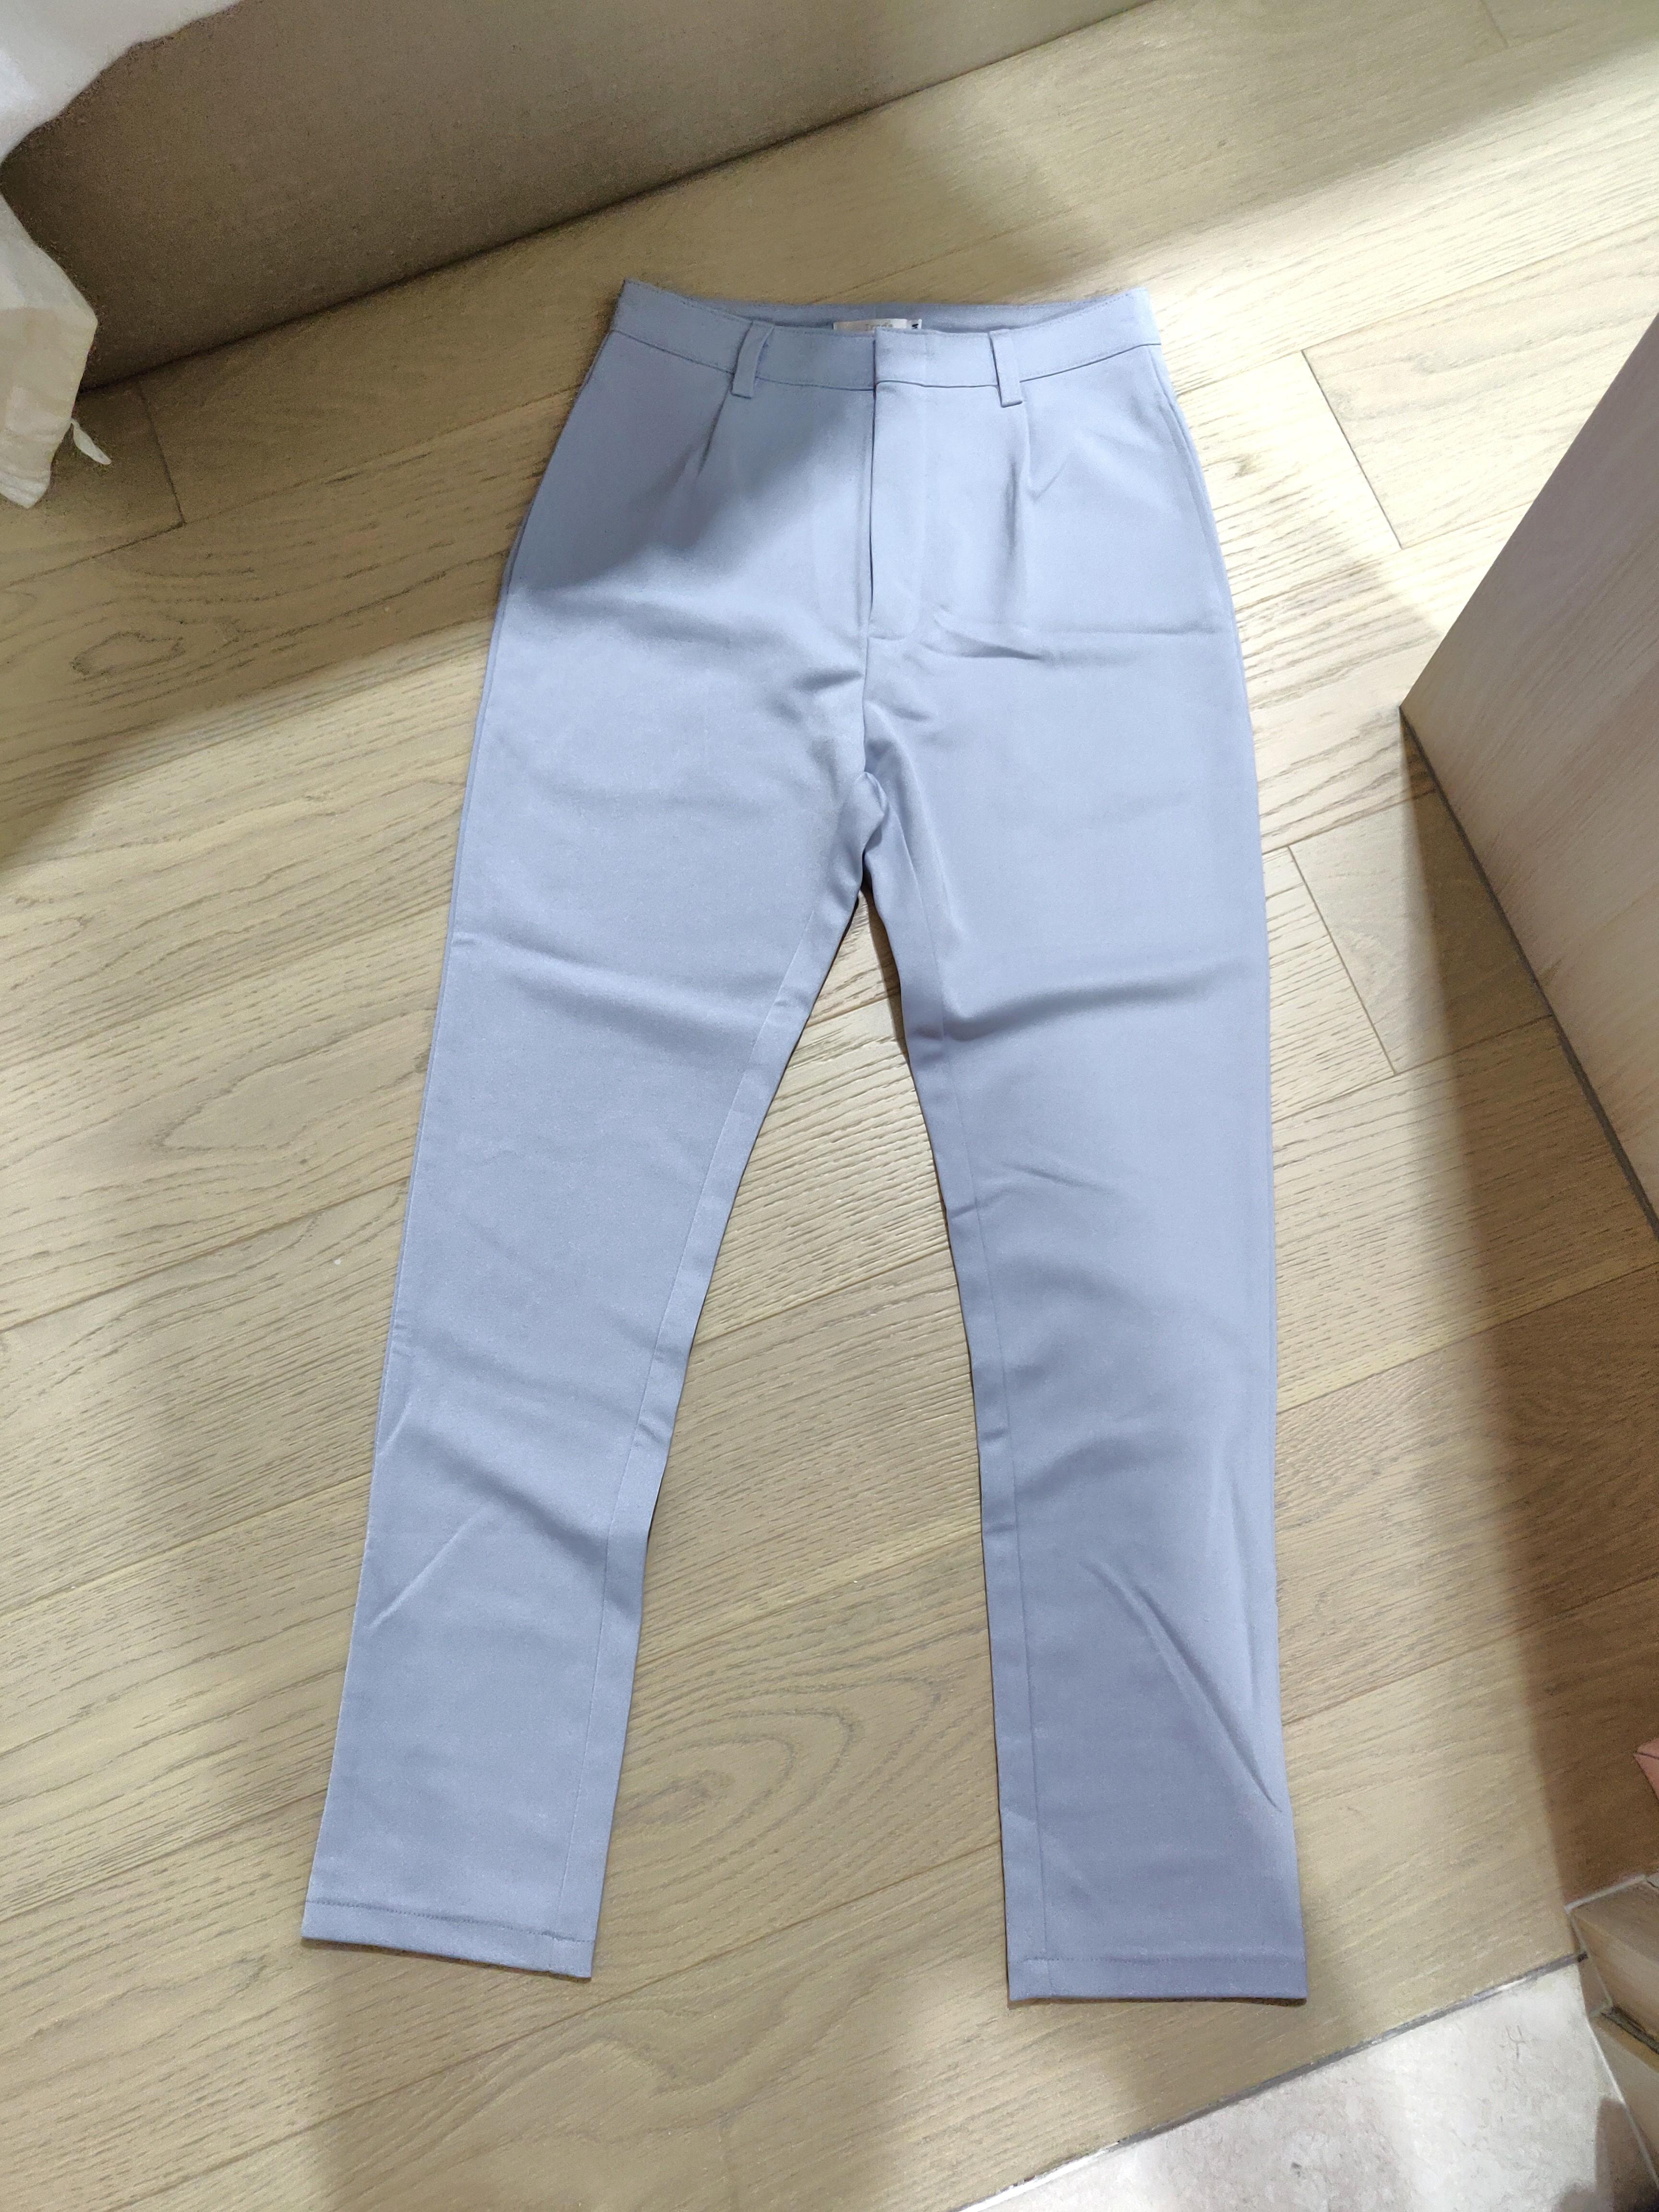 bluish grey jeans